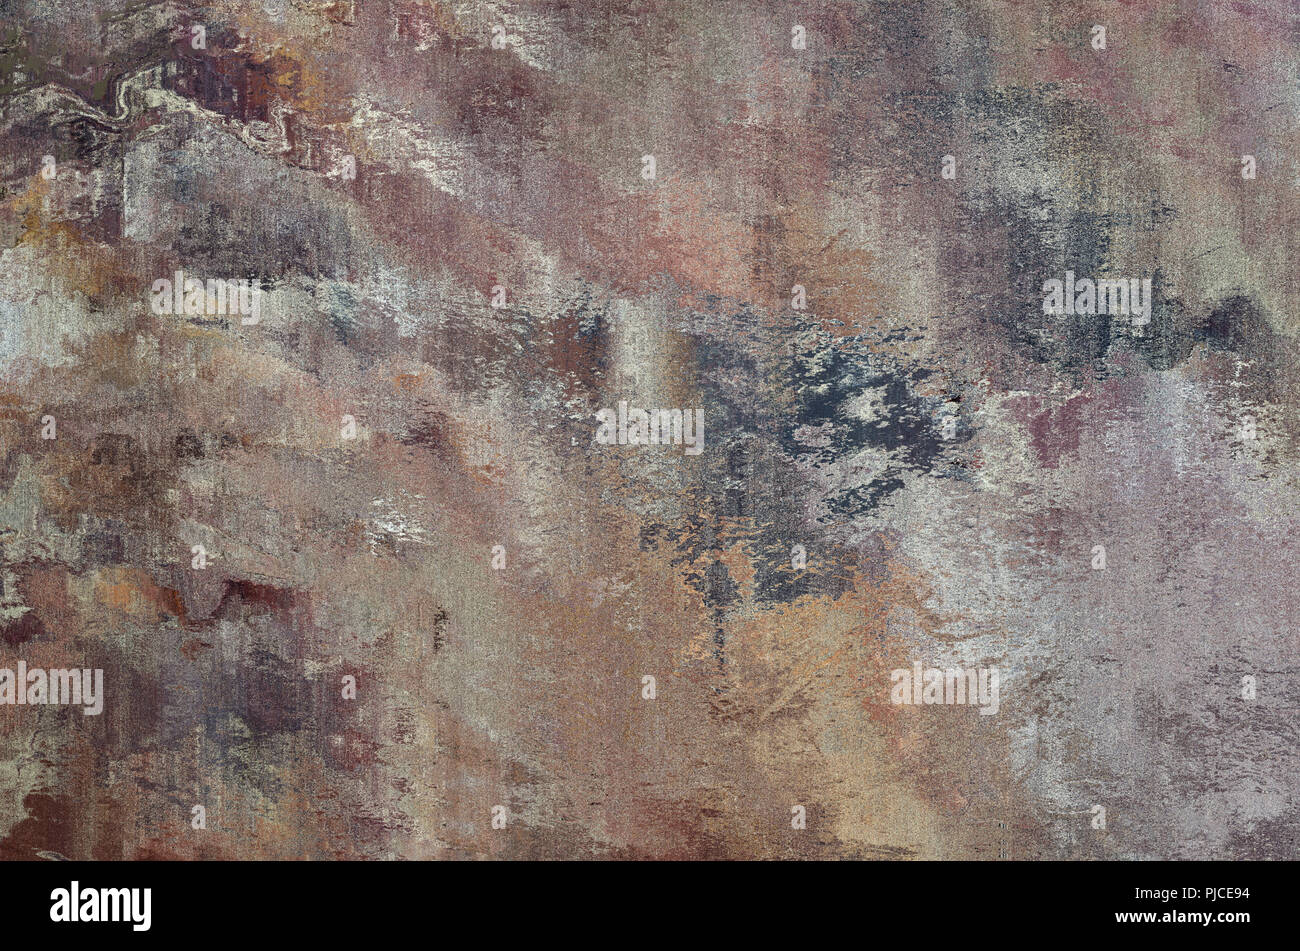 Ein Stein Wirkung Zusammenfassung Hintergrund Textur mit mehreren Blended und Zusammenführen von Farben. Pink, Lila, Grau, Gold und Braun. Stockfoto